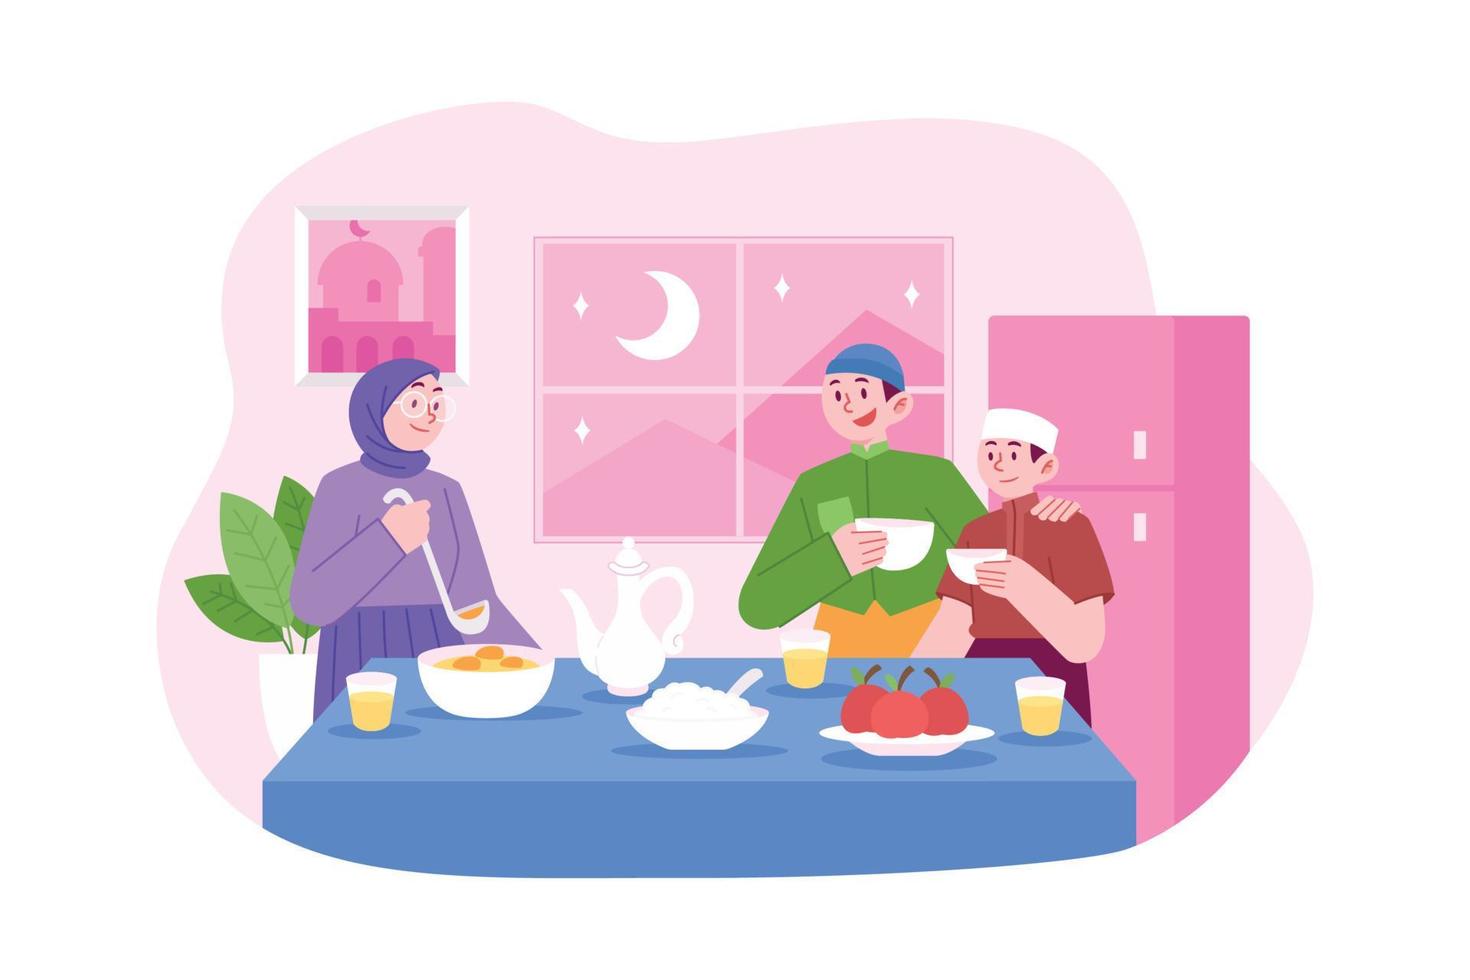 ramadan kareem mubarak concept vector illustratie idee voor bestemmingspagina sjabloon, islamitische familie ramadan feestdata, mensen bidden voor het ontbijt voor de heilige maand, handgetekende vlakke stijl